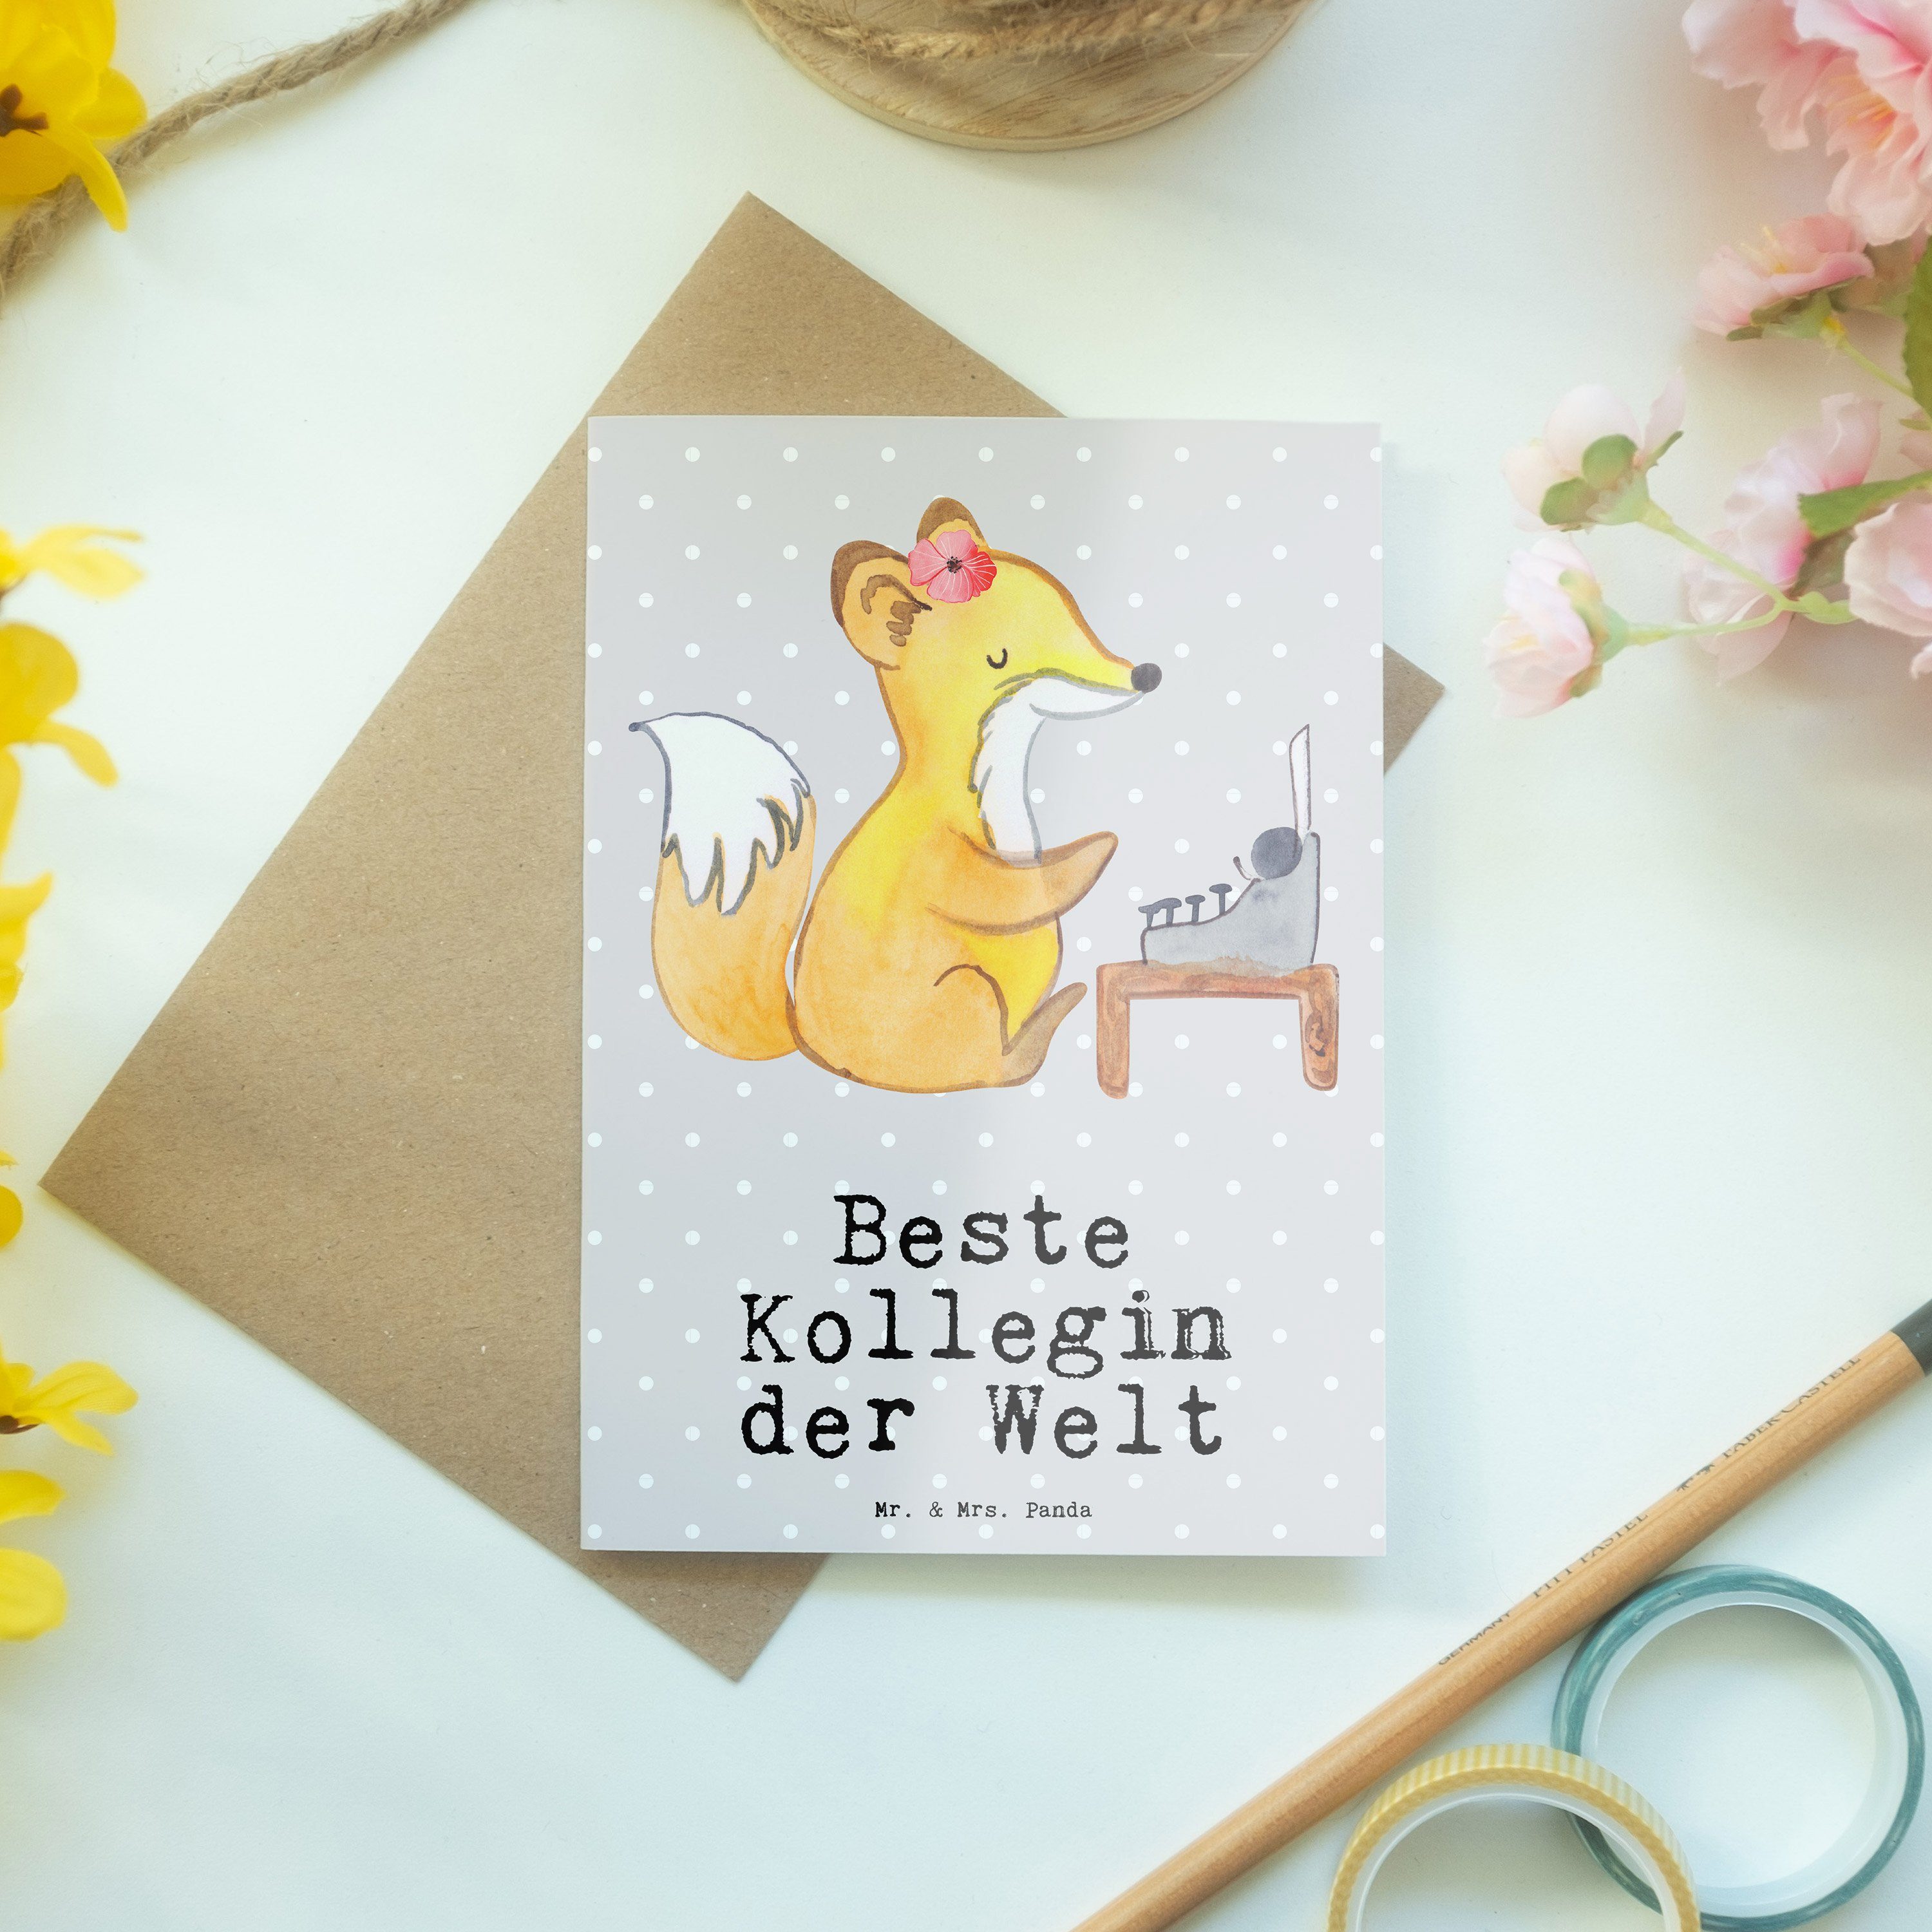 Mr. & Fuchs Beste - - Mrs. Welt Kollegin Geschenk, Klapp Grau Karte, der Grußkarte Pastell Panda